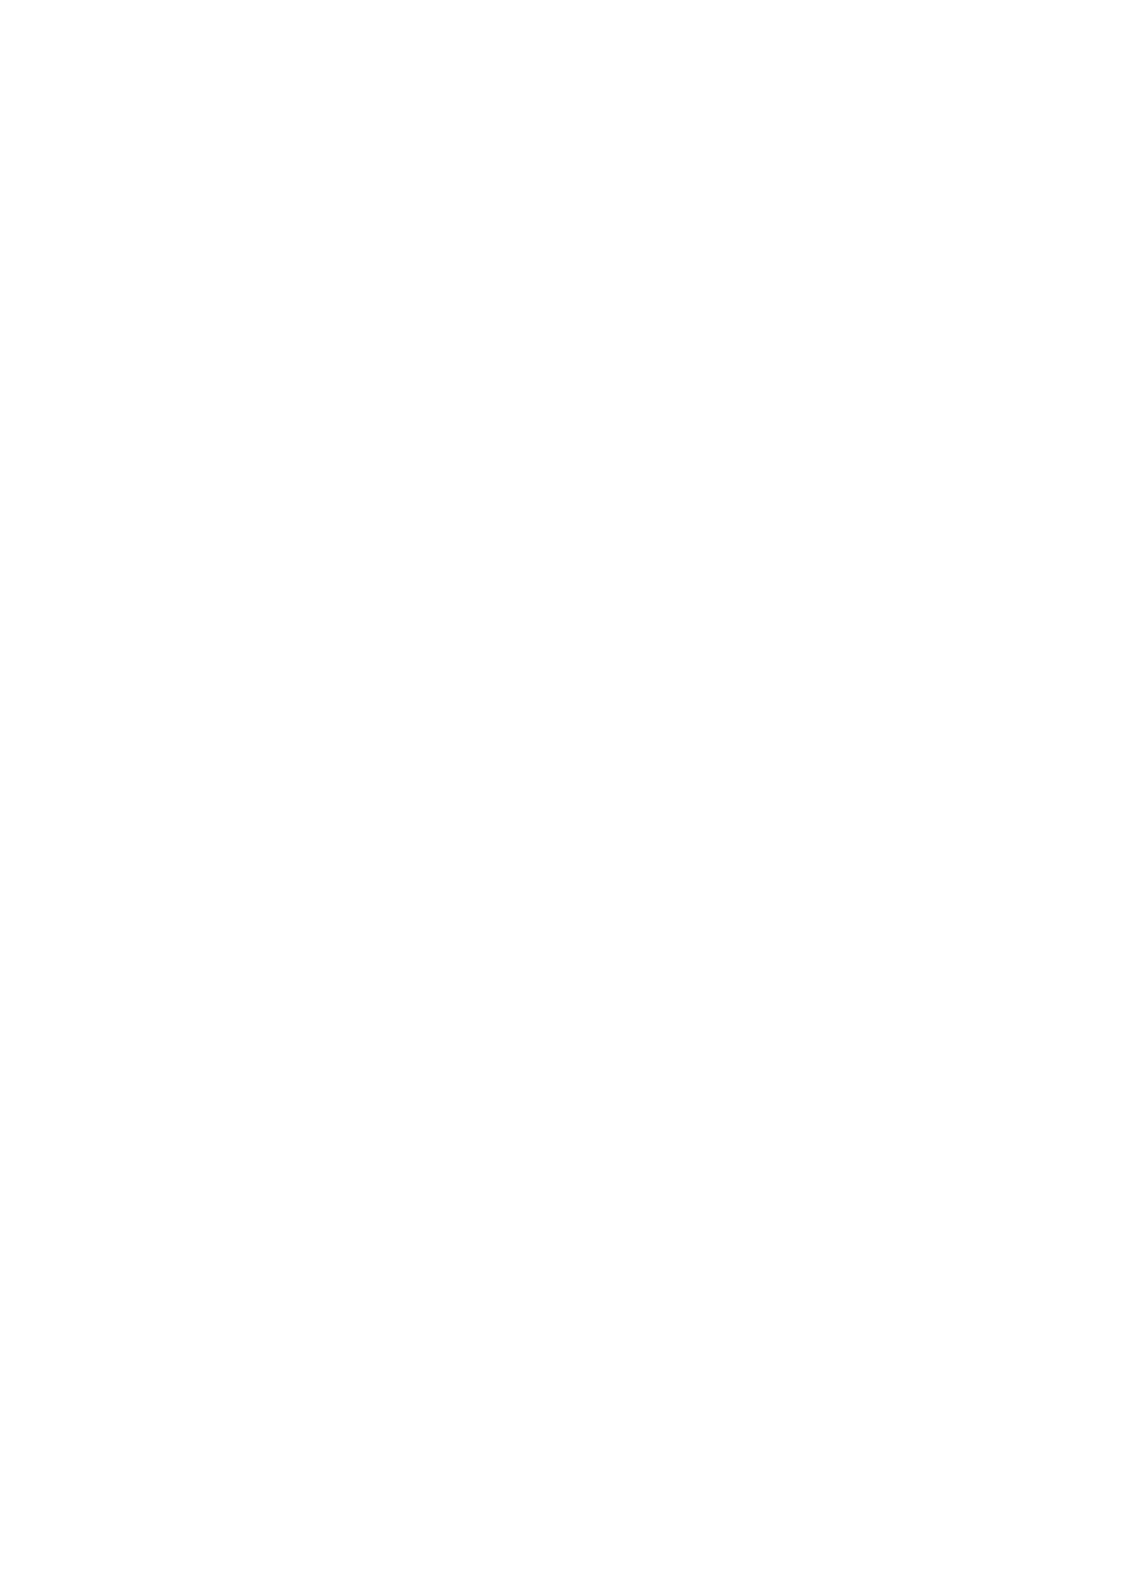 Dayforce logo pour fonds sombres (PNG transparent)